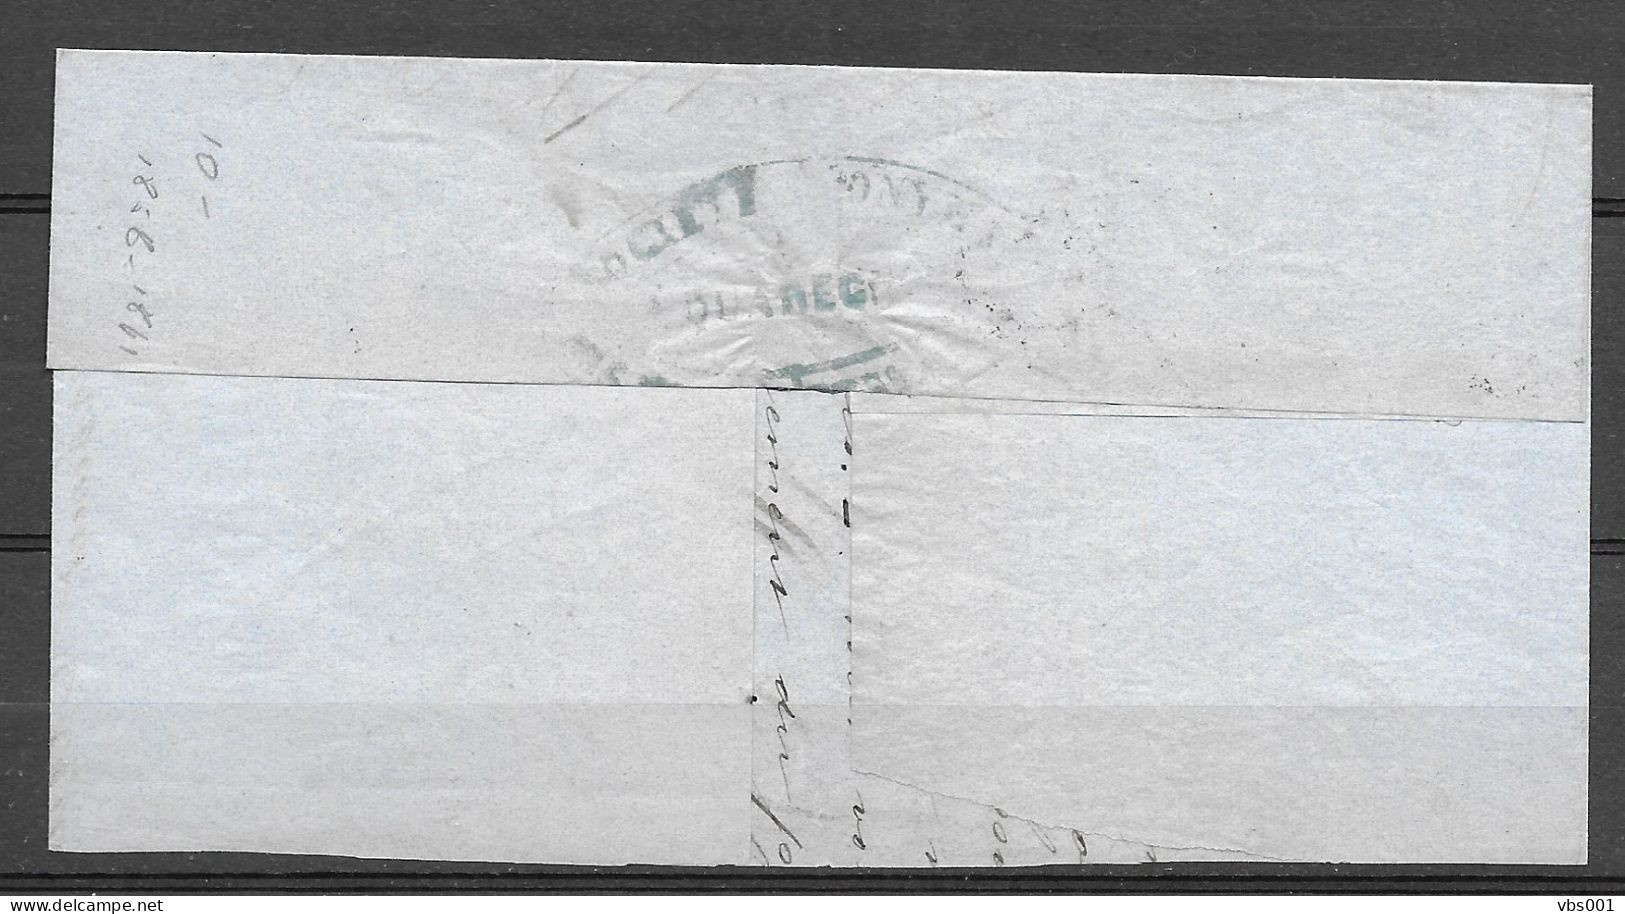 OBP10A Op Brief Uit 1860 Verzonden Vanuit Jemmapes (P65), Met Vertrekstempel - 1858-1862 Médaillons (9/12)